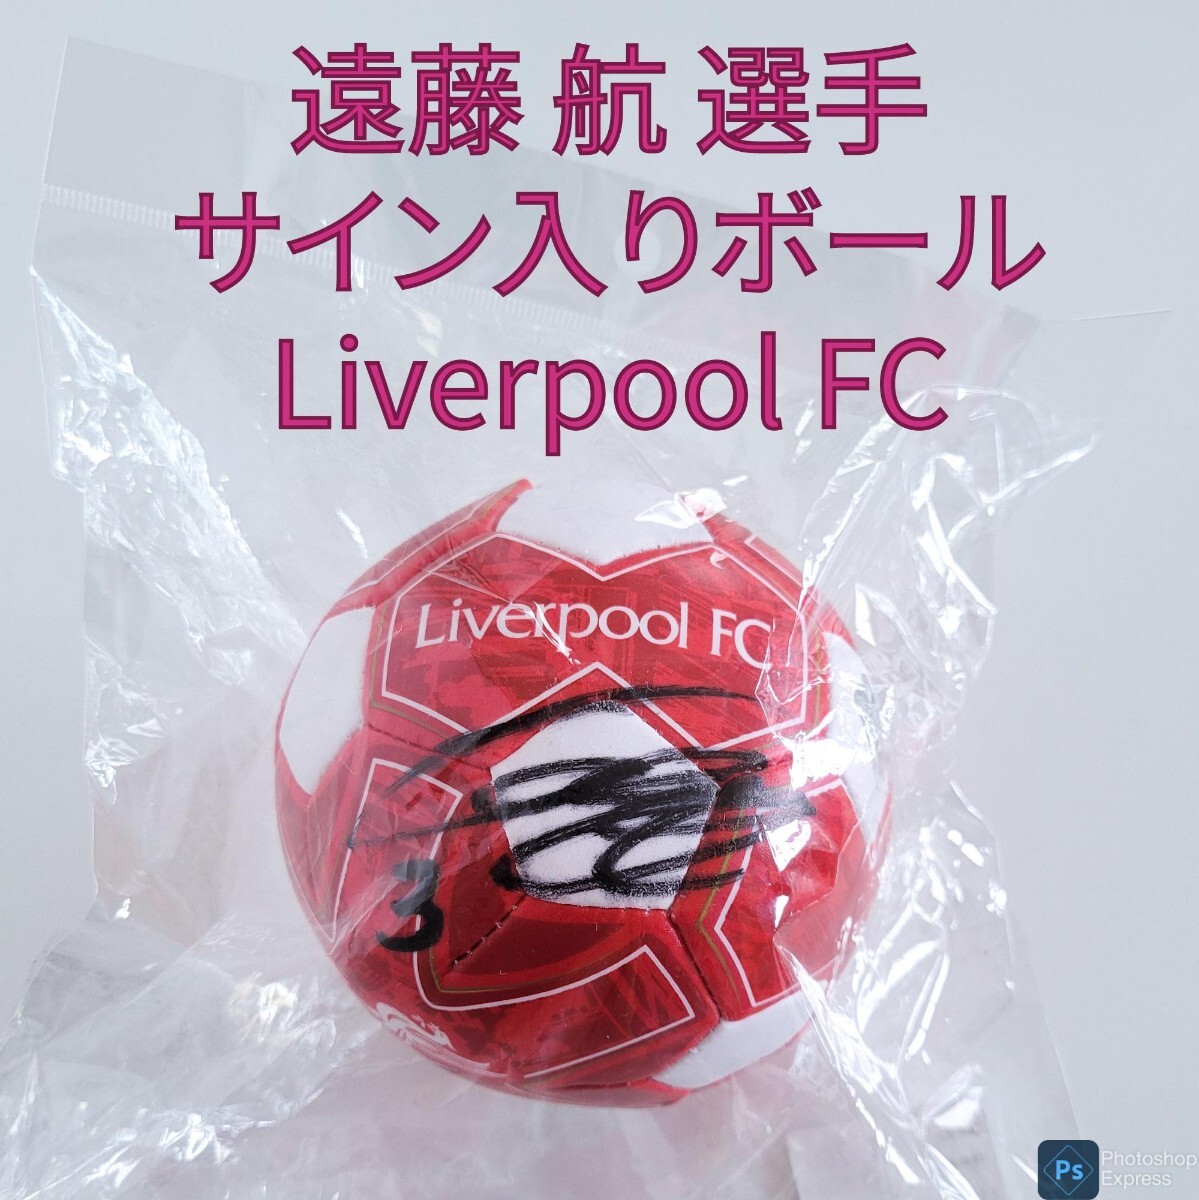 遠藤 航 サイン入りボール リヴァプールFC サッカー 選手 Liverpool_画像1